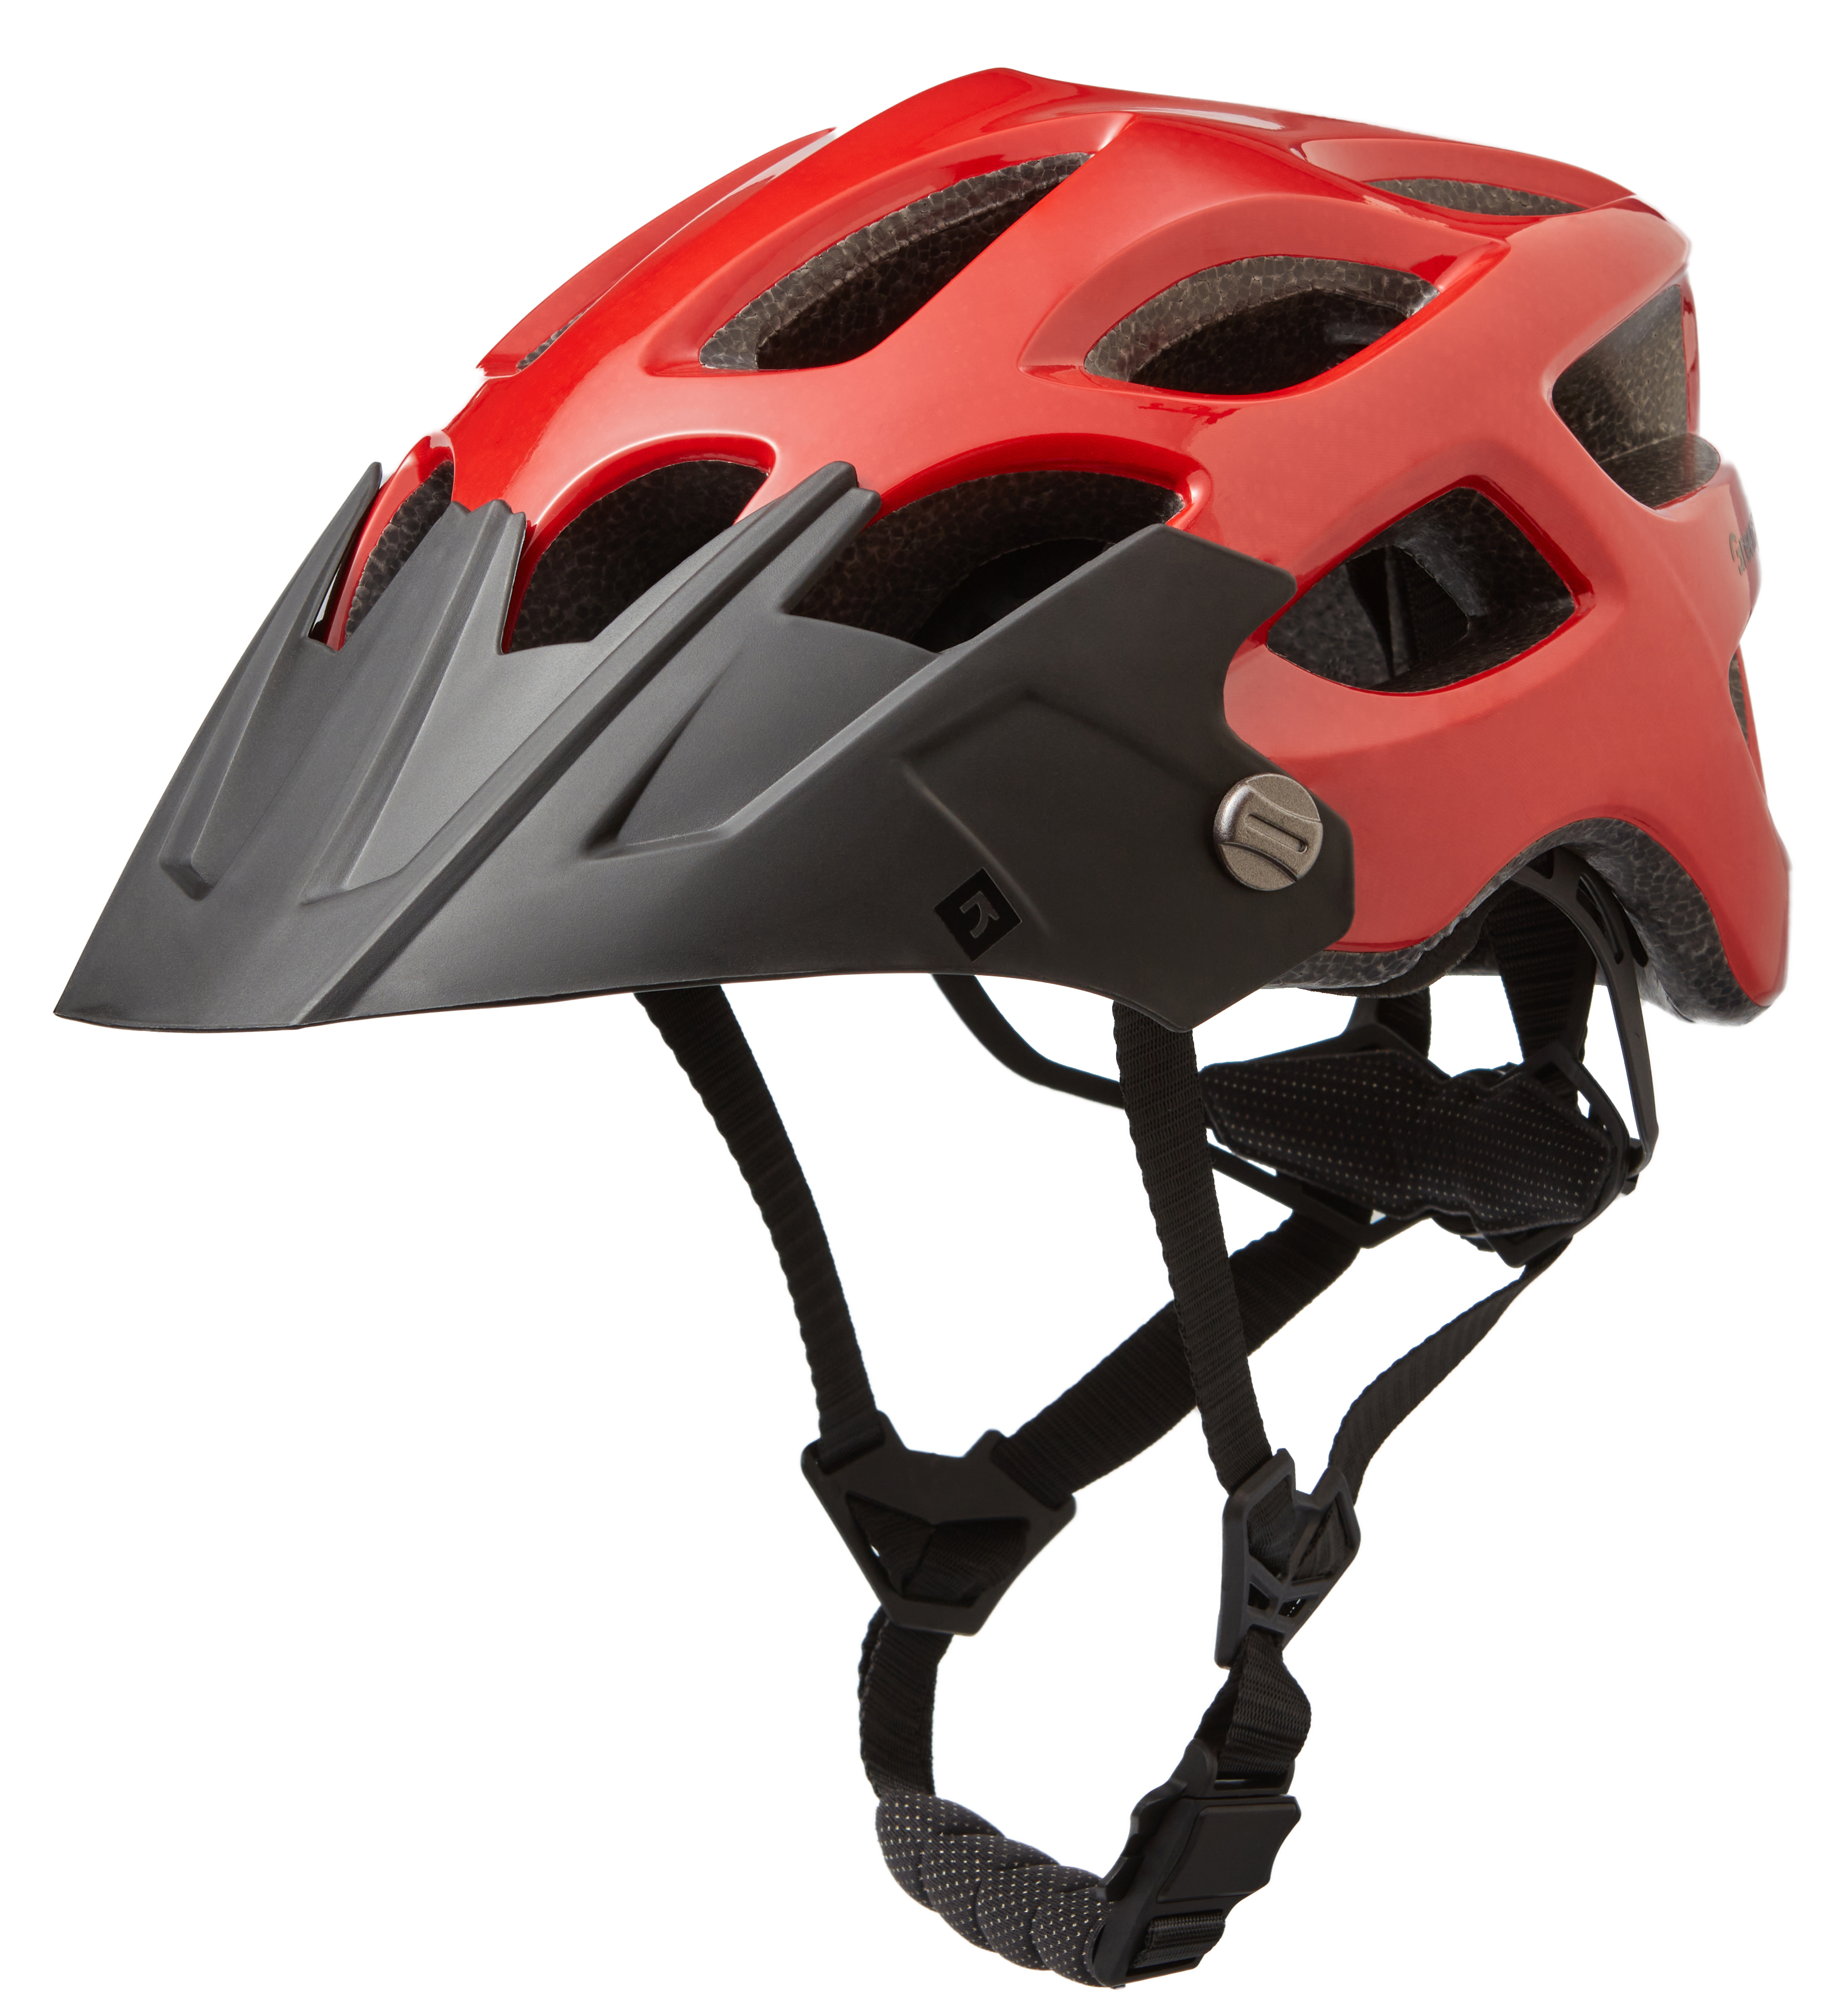 Шлем Green Cycle Revenge RS размер 58-61см темно-оранжевый глянец